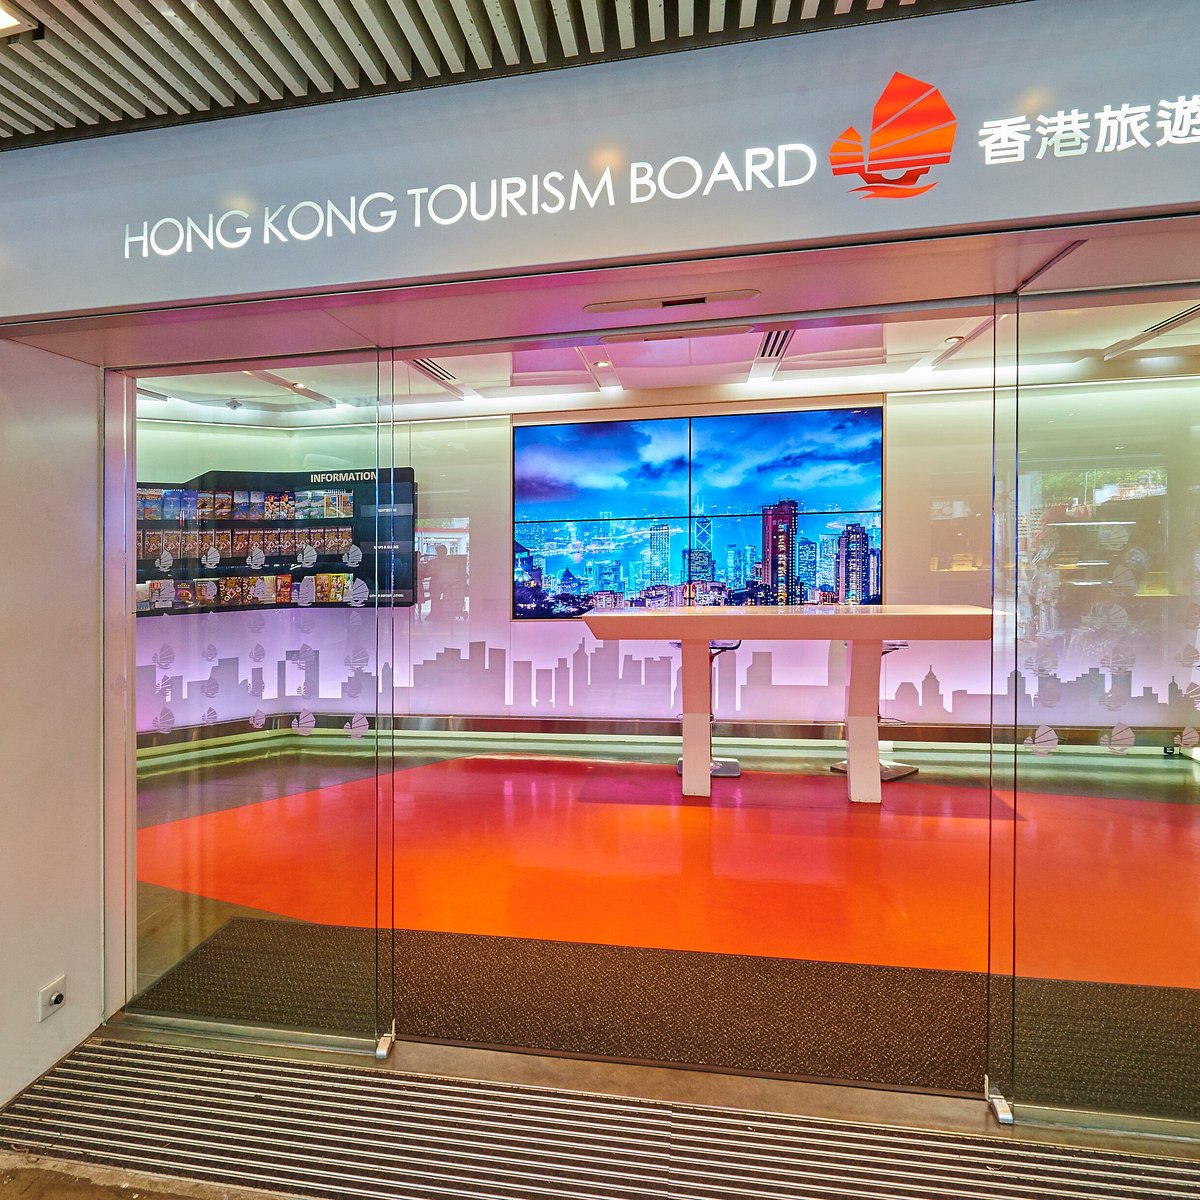 hong kong tourism board video